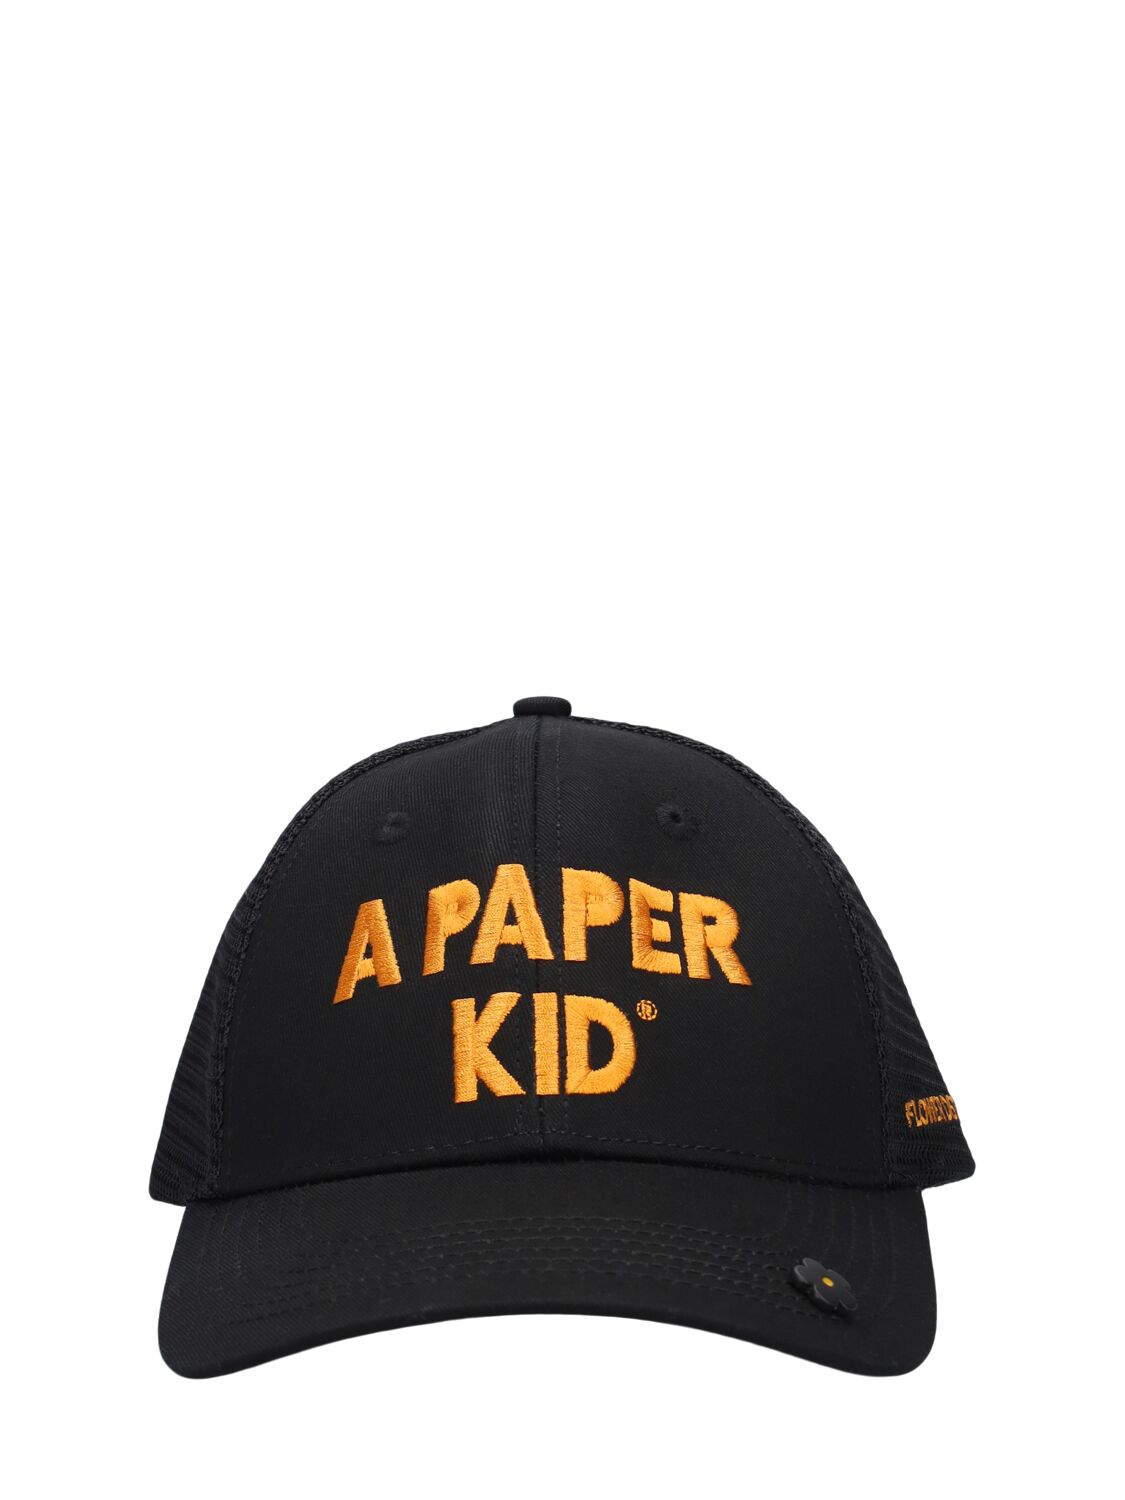 A Paper Kid Unisex Trucker Hat In Black